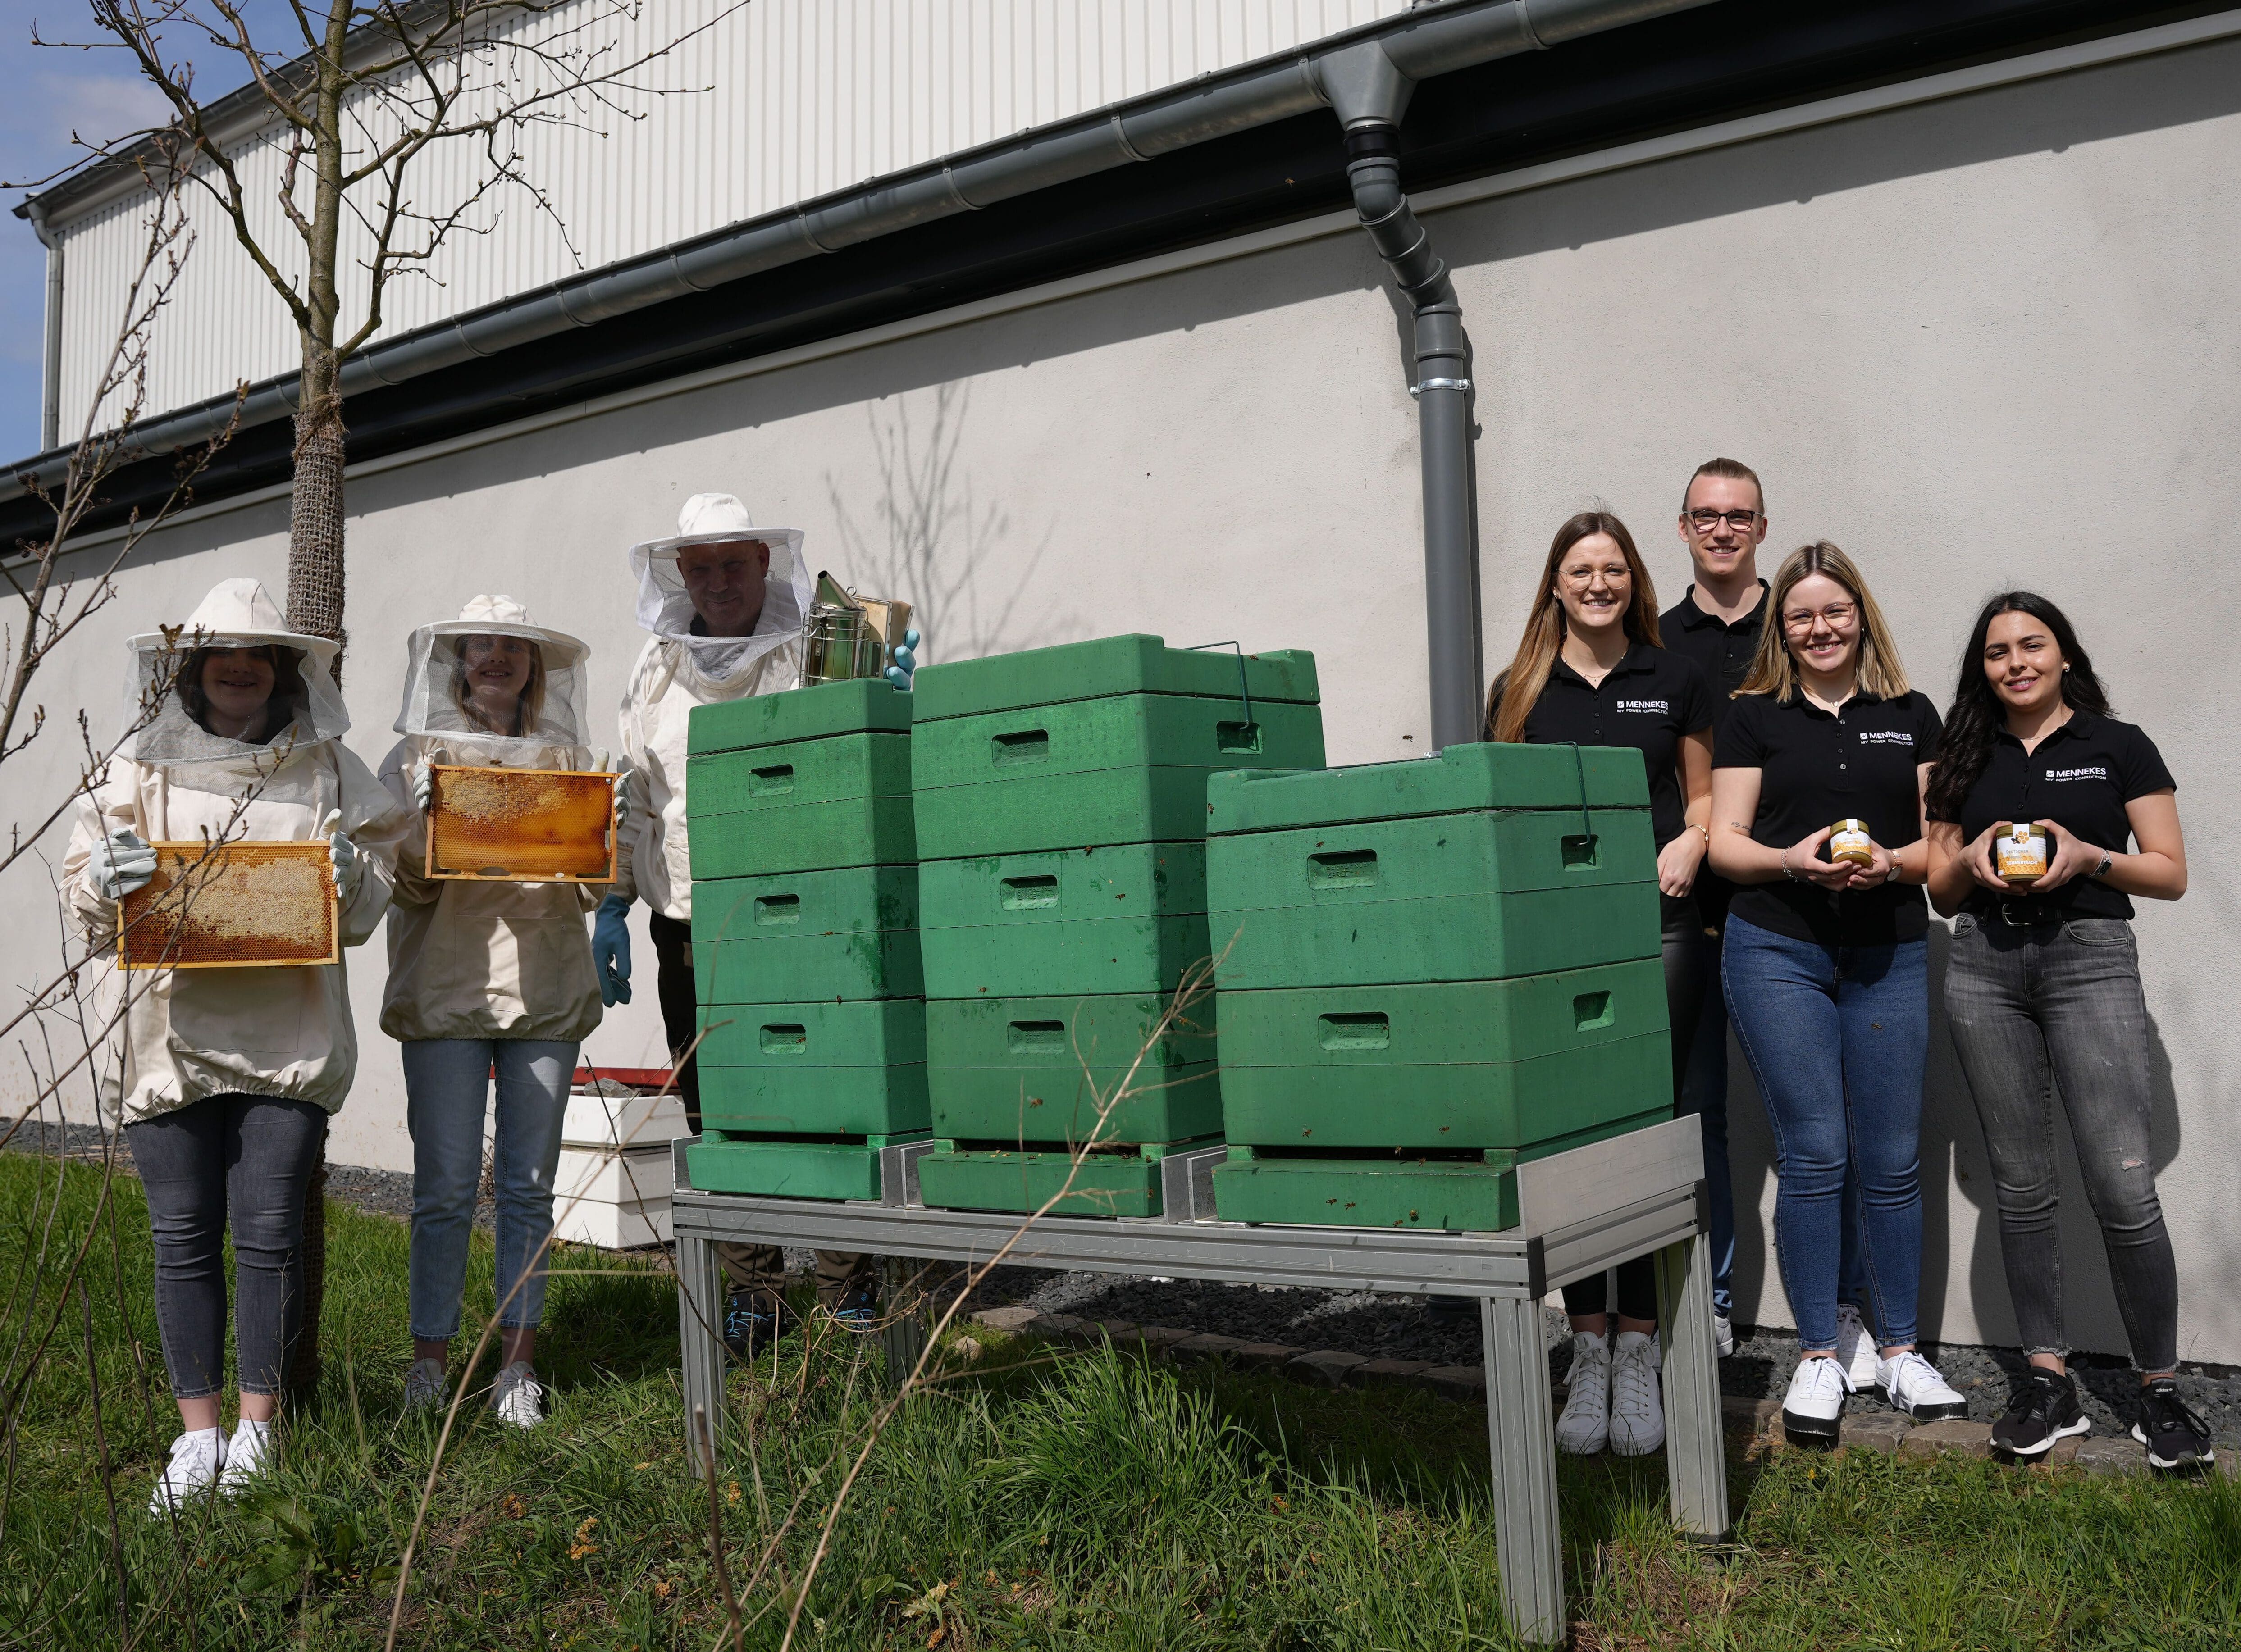 Das Azubi-Team, das am Mennekes-Logistikzentrum die Bienen betreut präsentiert u.a. Gläser des Honigs 2022 - MENNEKES / Foto Remo Wutta